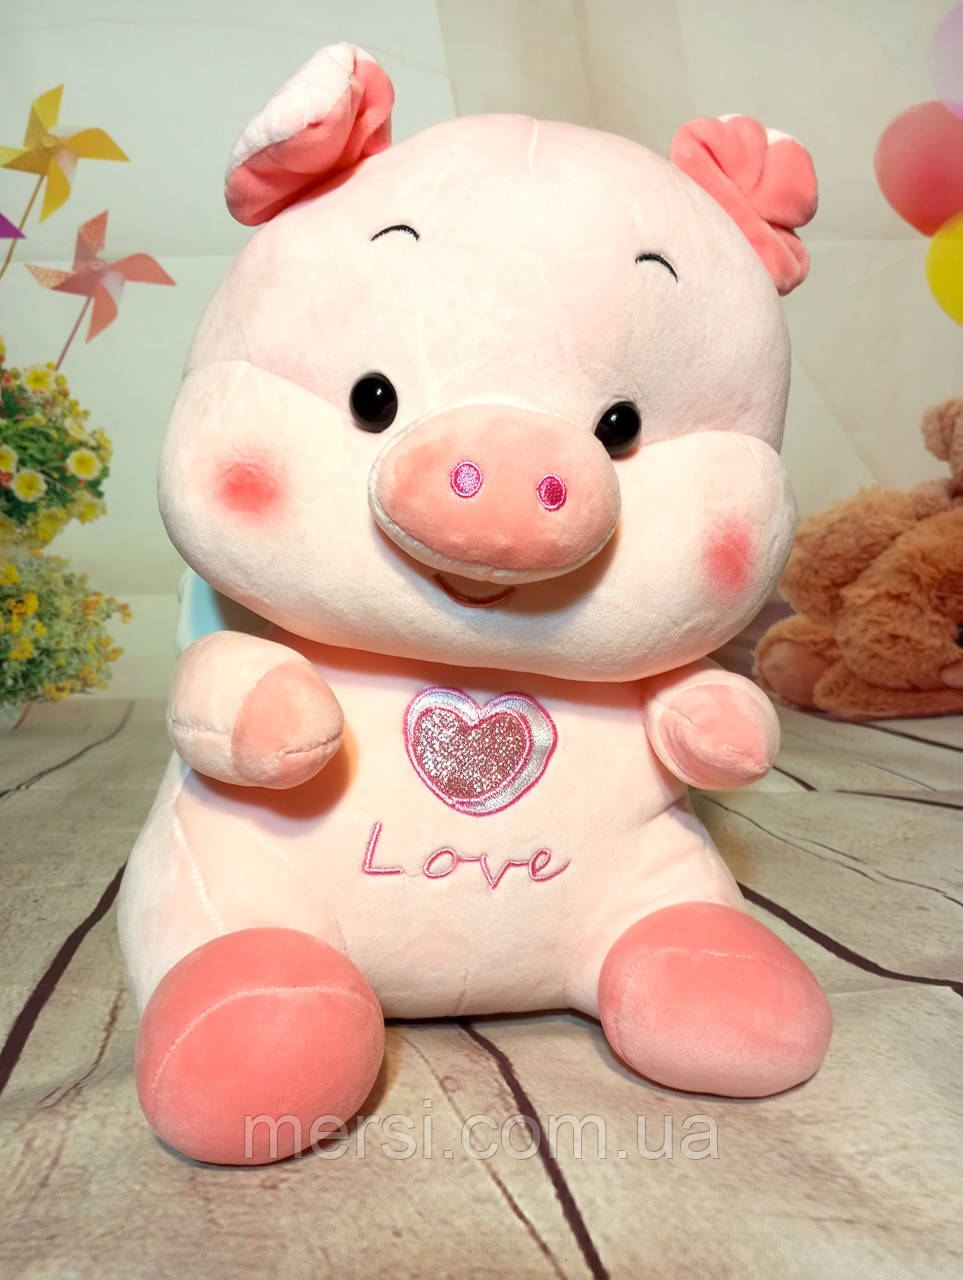 М'яка іграшка Свинка ангел з крильцями та серцем, плюшева свинка love, любов. 33 см.